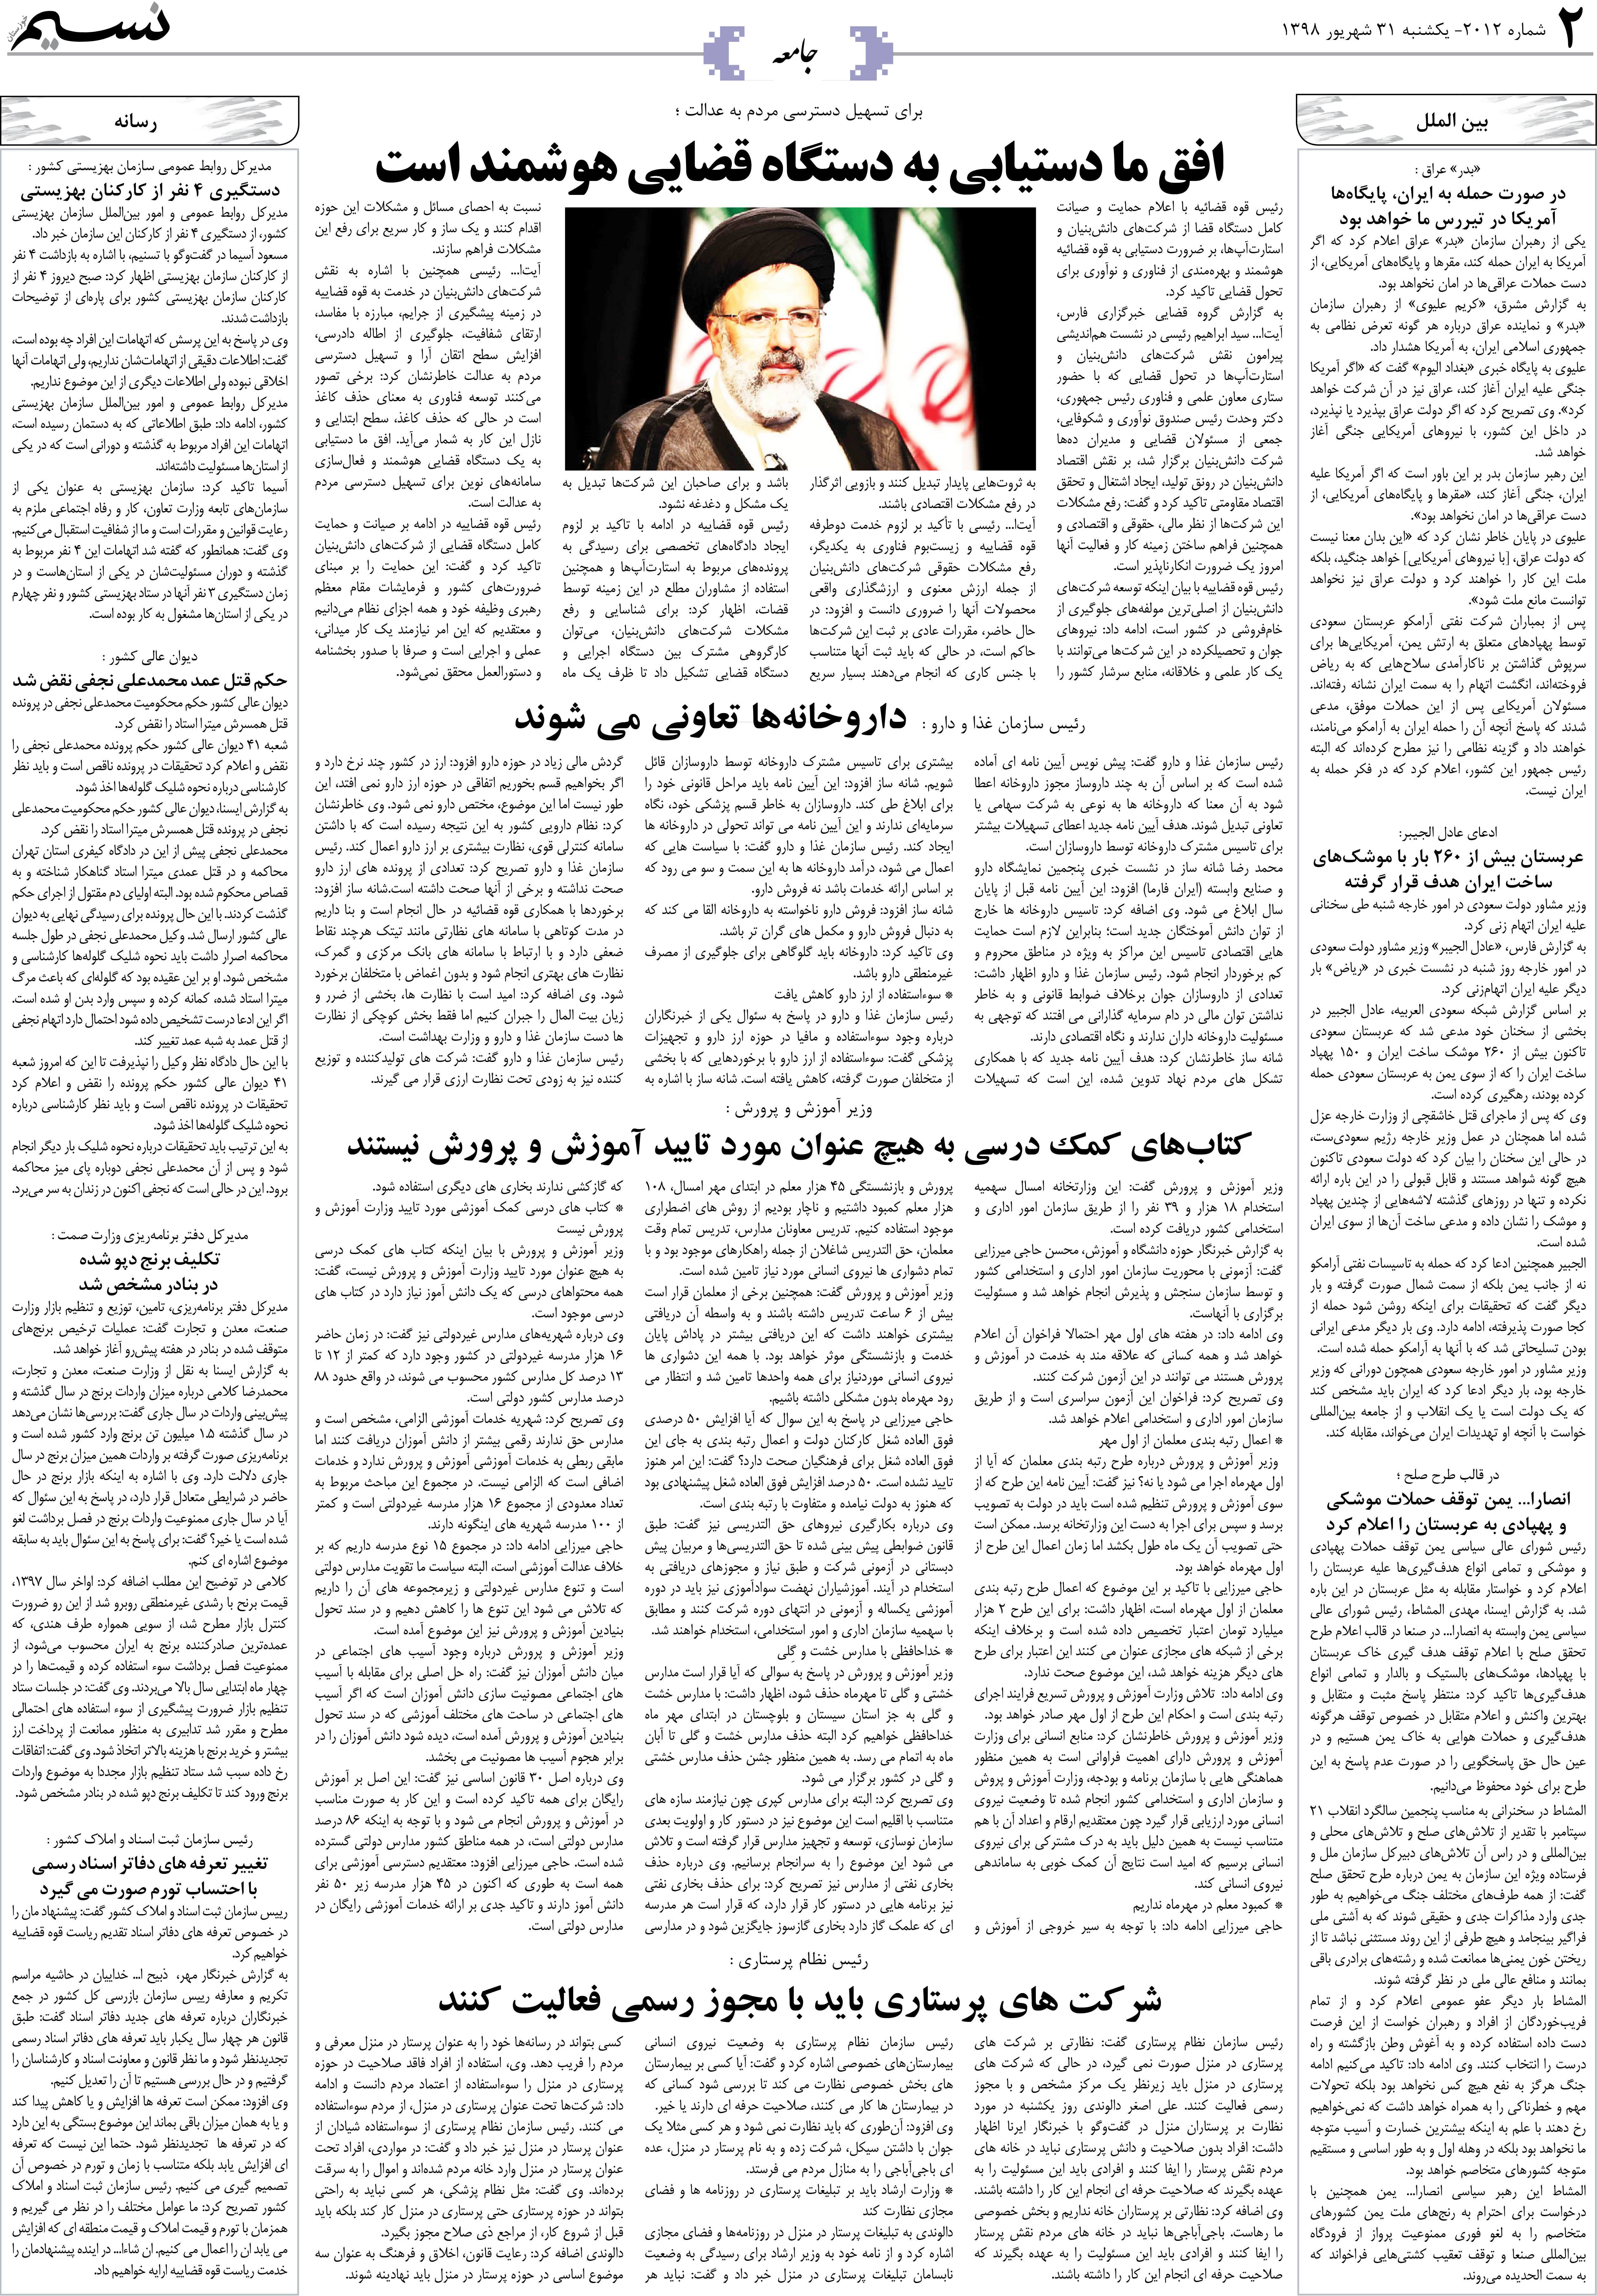 صفحه جامعه روزنامه نسیم شماره 2012